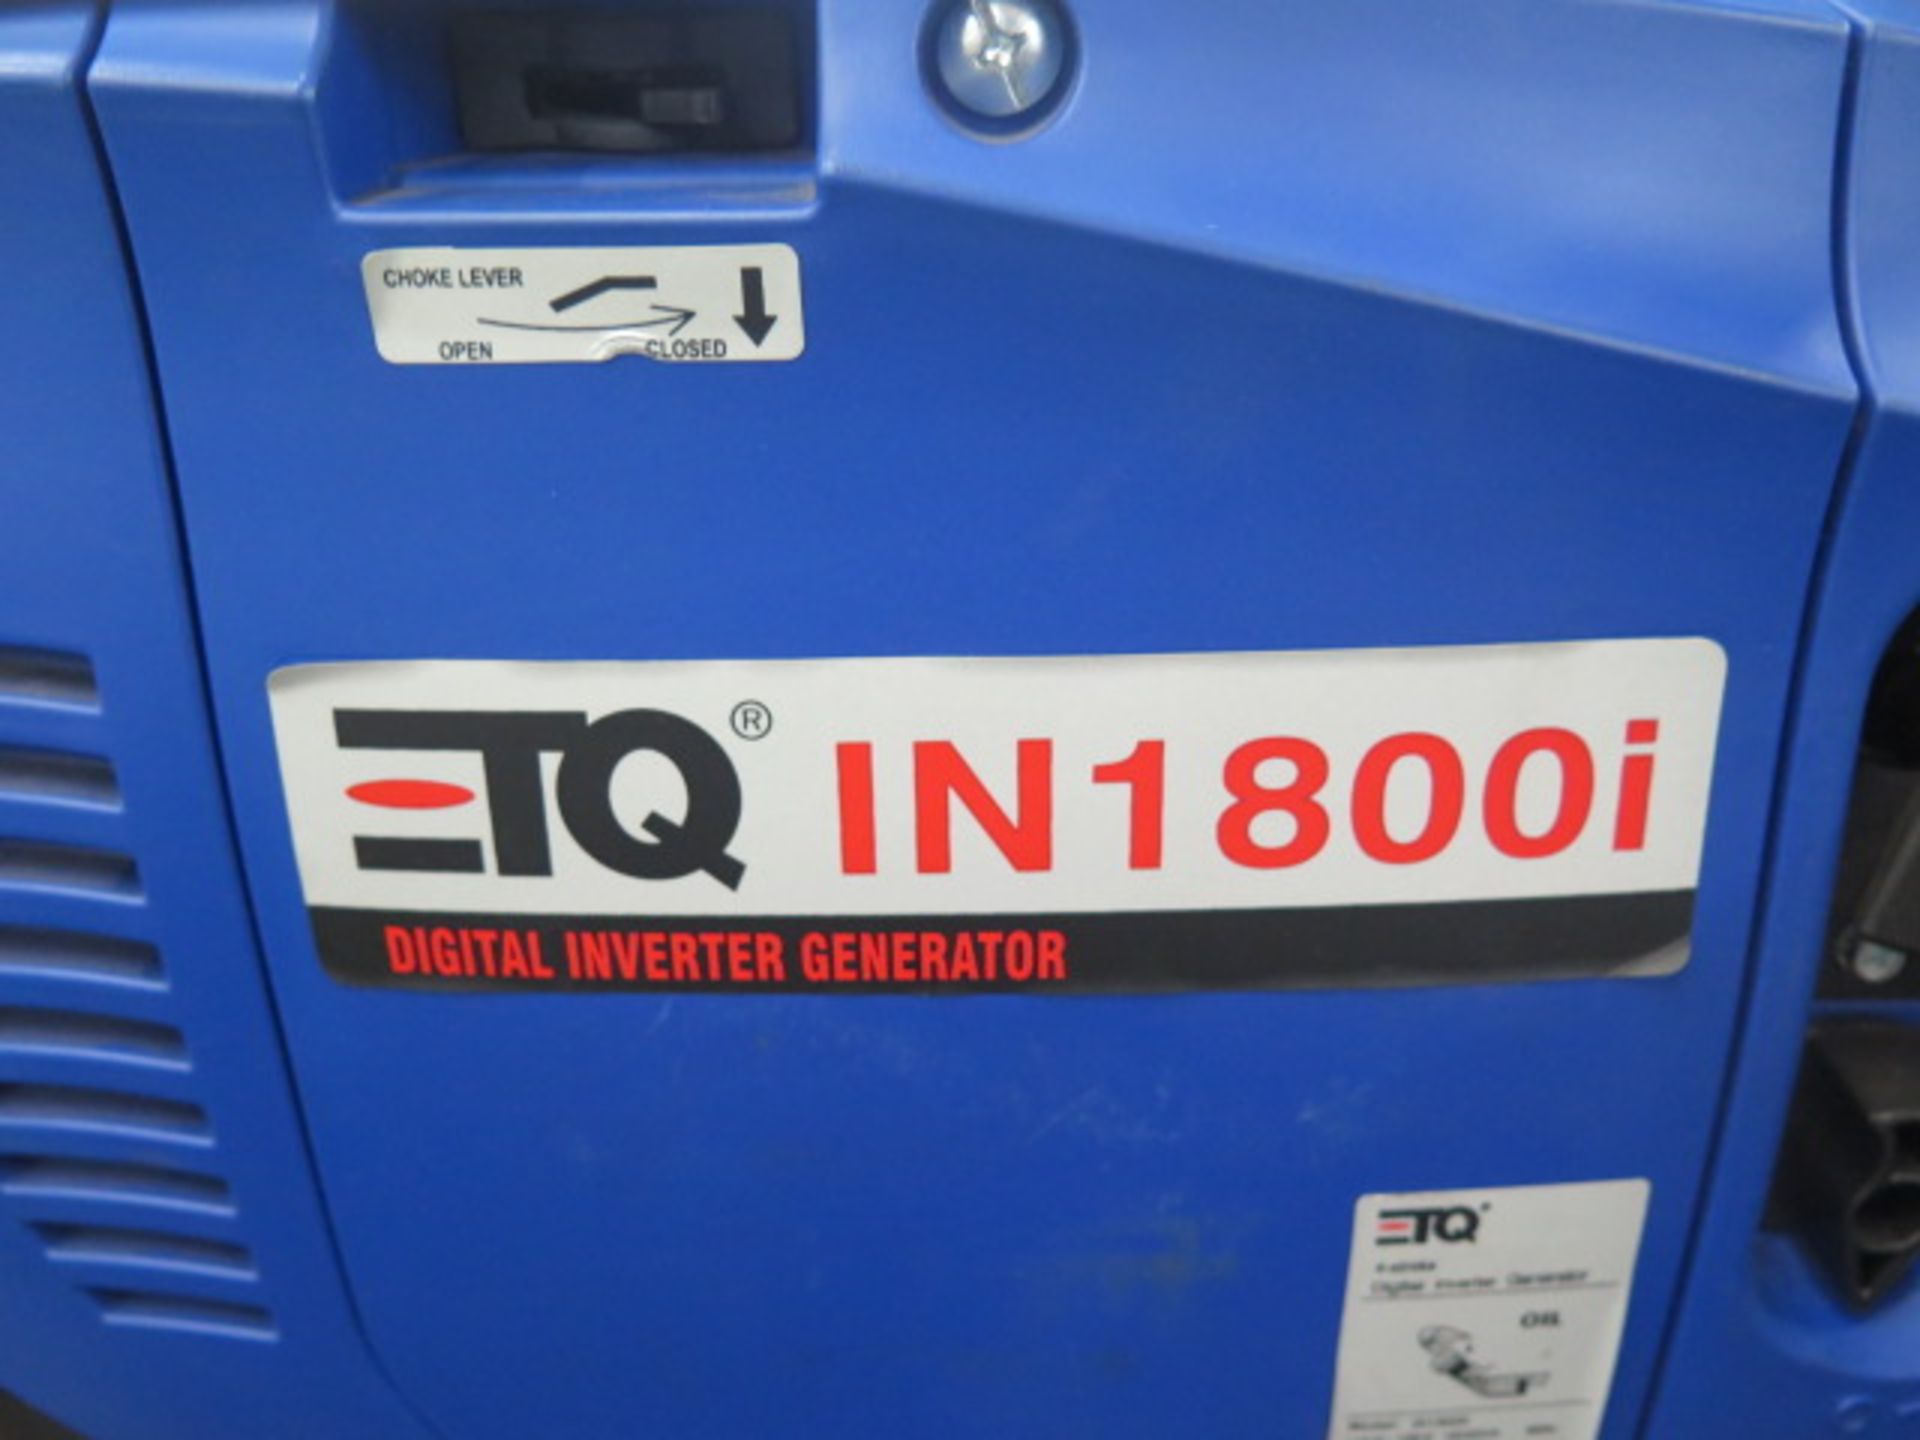 ETQ IN1800i 1800 Watt Gas Powered Generator - Image 2 of 3